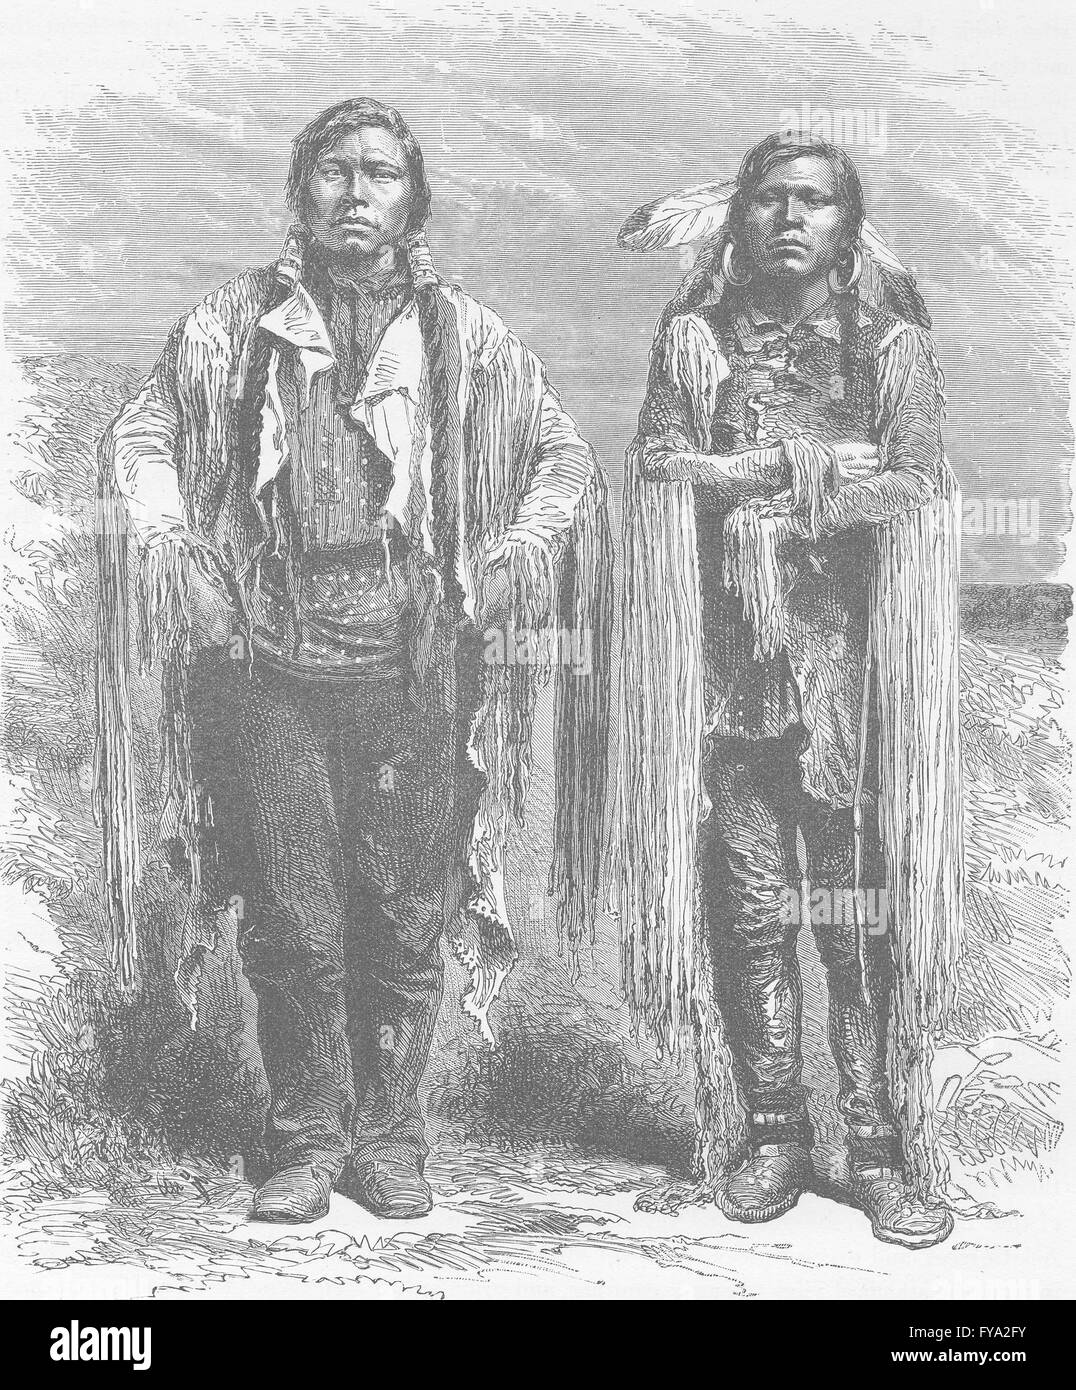 COLORADO: Ute Indians of Western Colorado, antique print 1890 Stock Photo